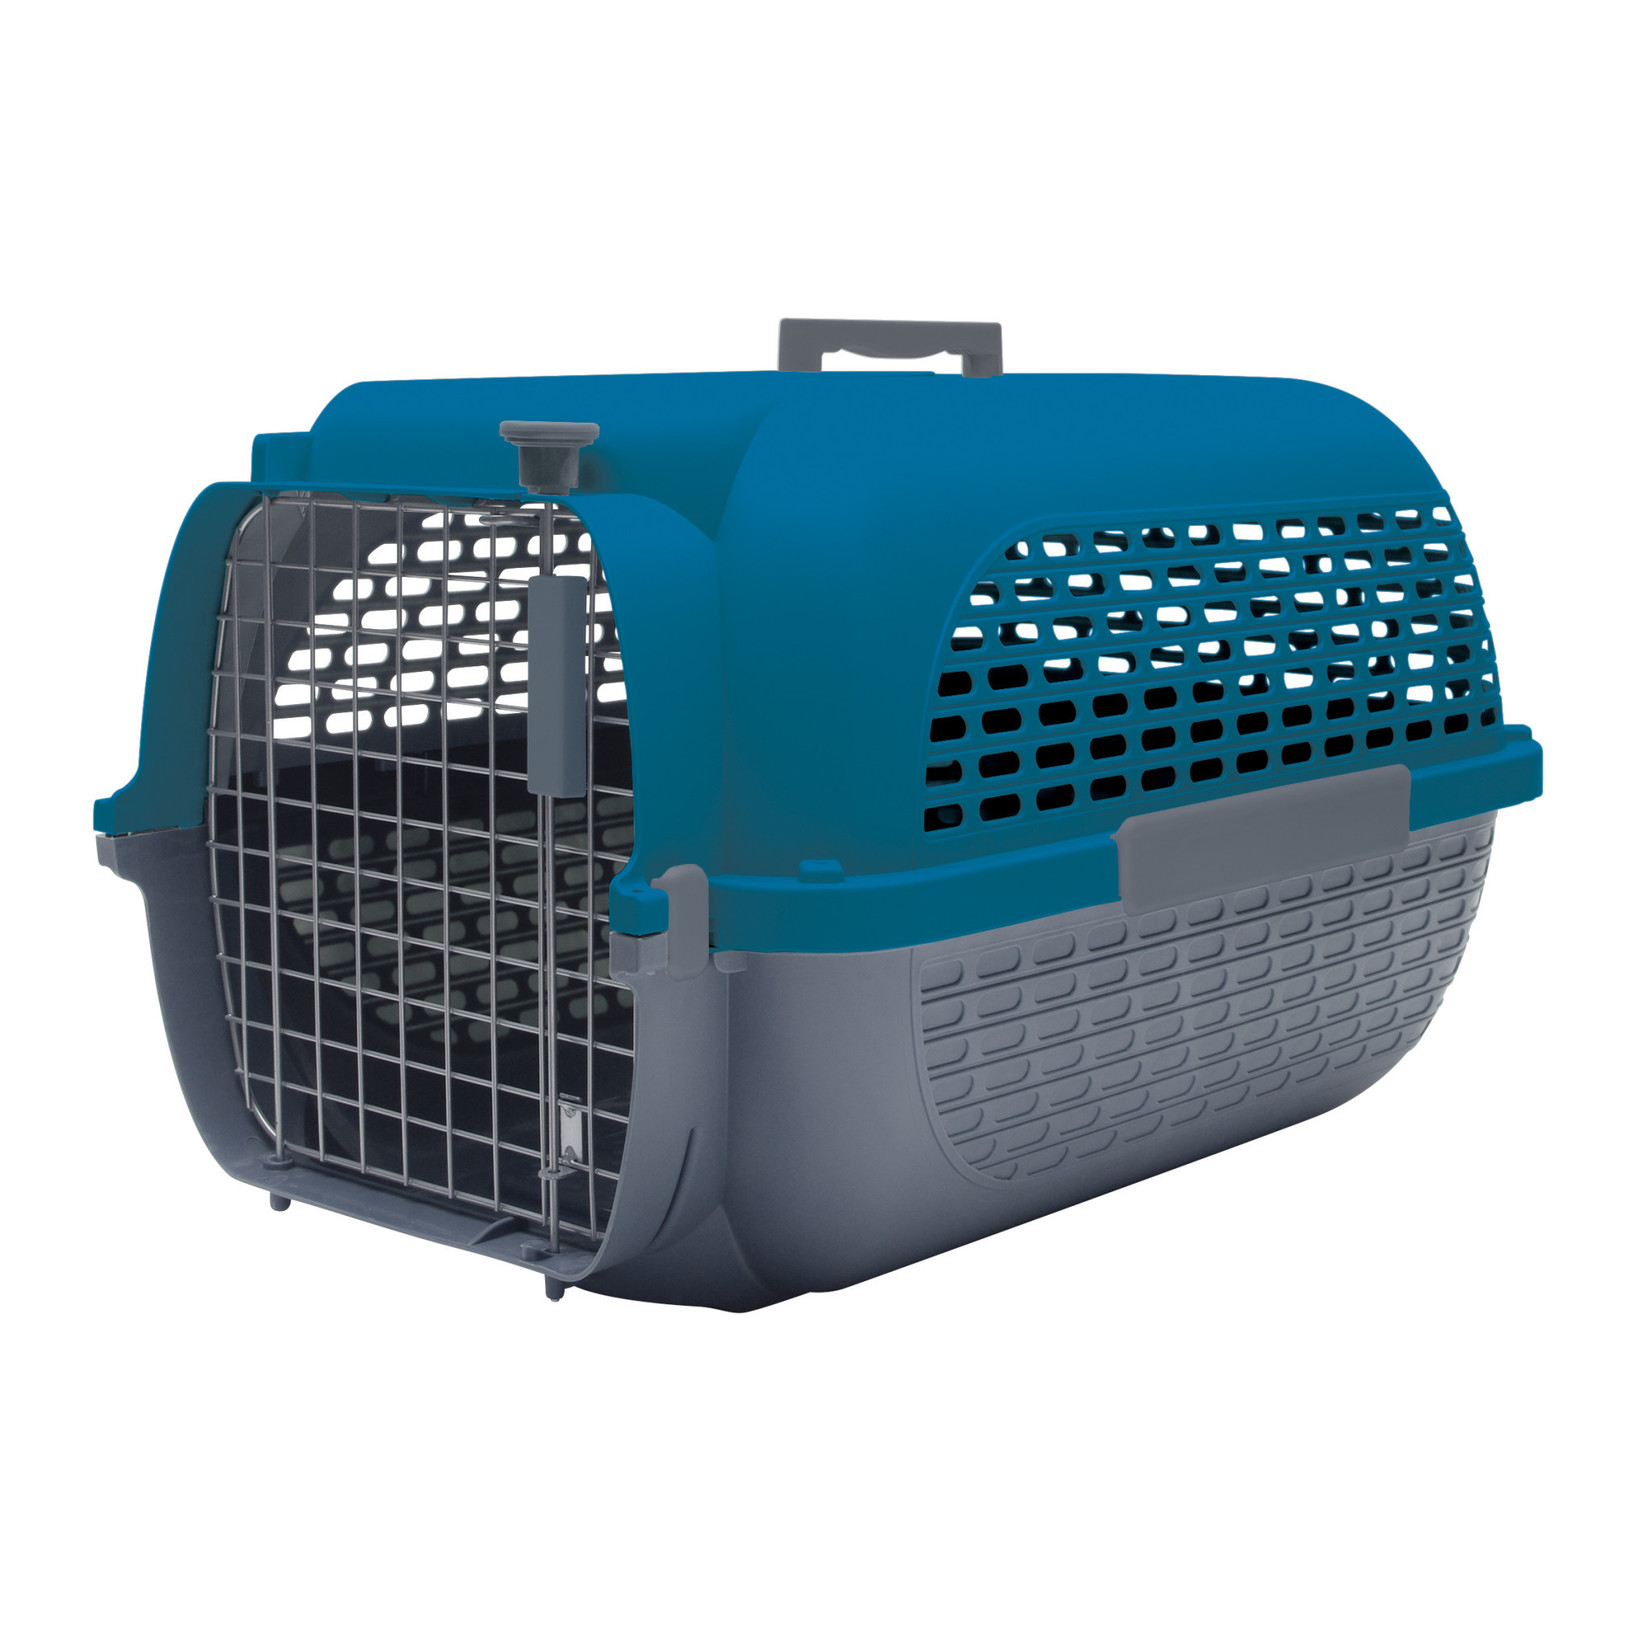 DogIt Dogit Voyageur Dog Carrier - Dark Blue/Charcoal - Small - 48.3 cm L x 32.6 cm W x 28 cm H (19 in x 12.8 in x 11 in